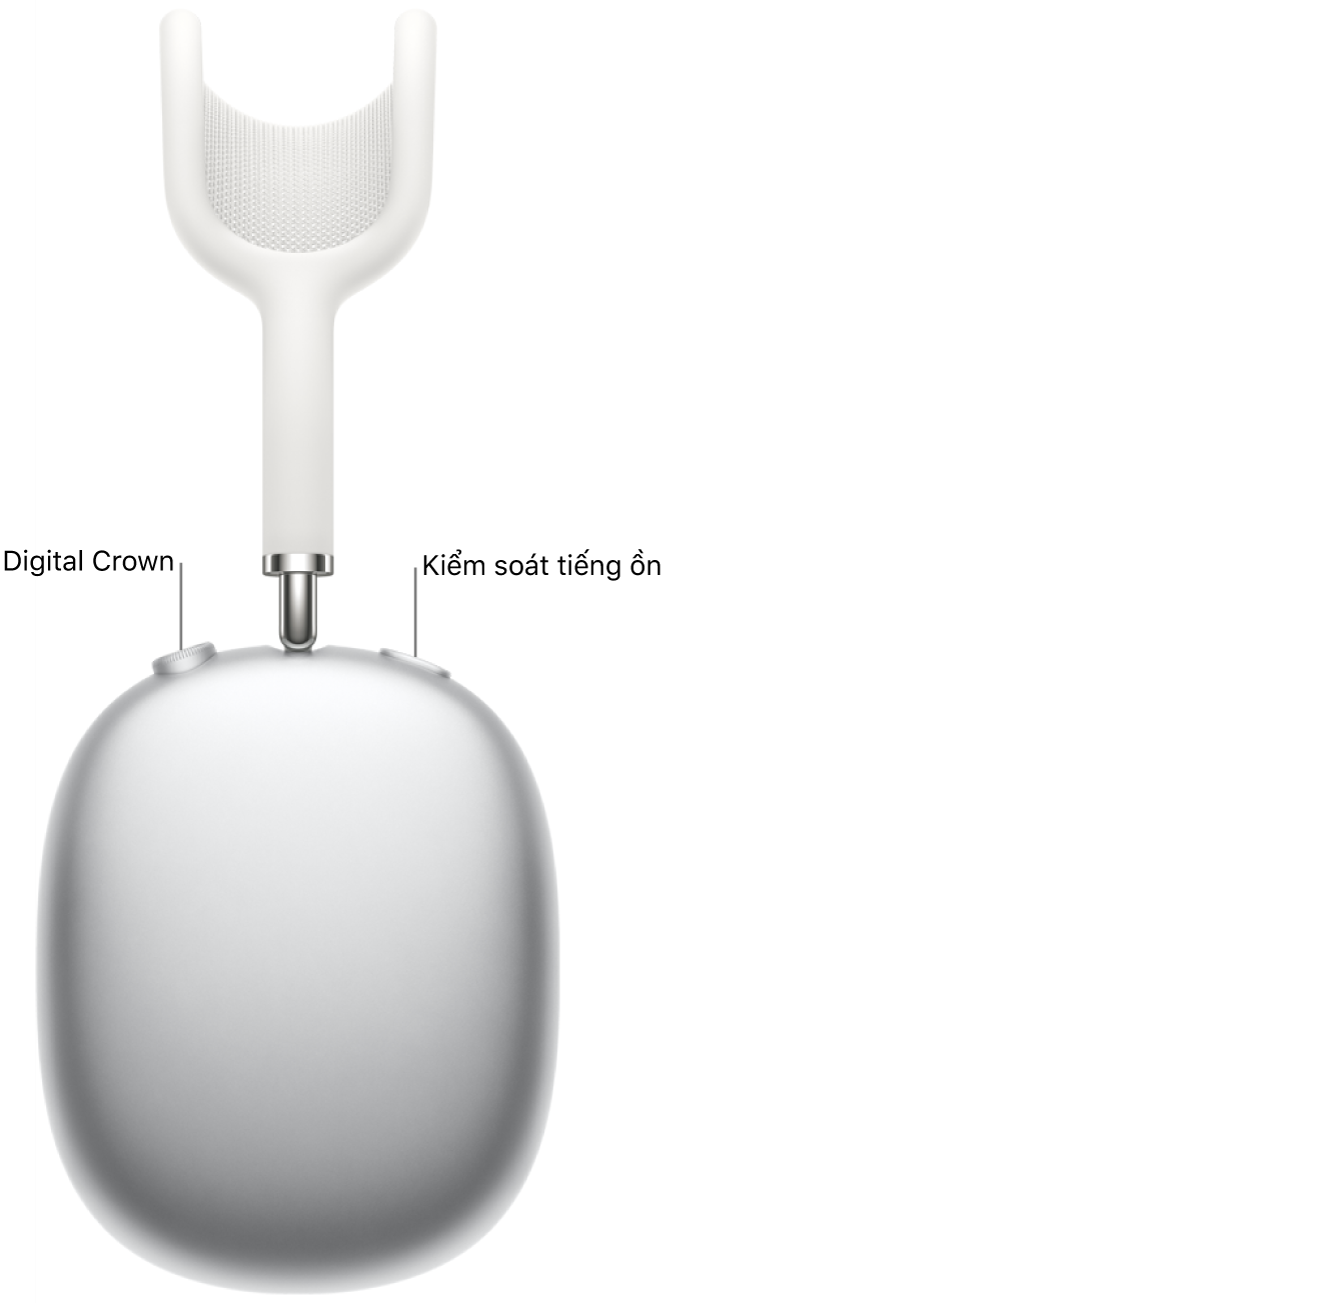 Tai nghe ở bên phải bên trên AirPods Max, đang được hiển thị Digital Crown phía trên nằm trong phía bên trái của tai nghe và nút trấn áp giờ đồng hồ ồn phía trên nằm trong ở bên phải.